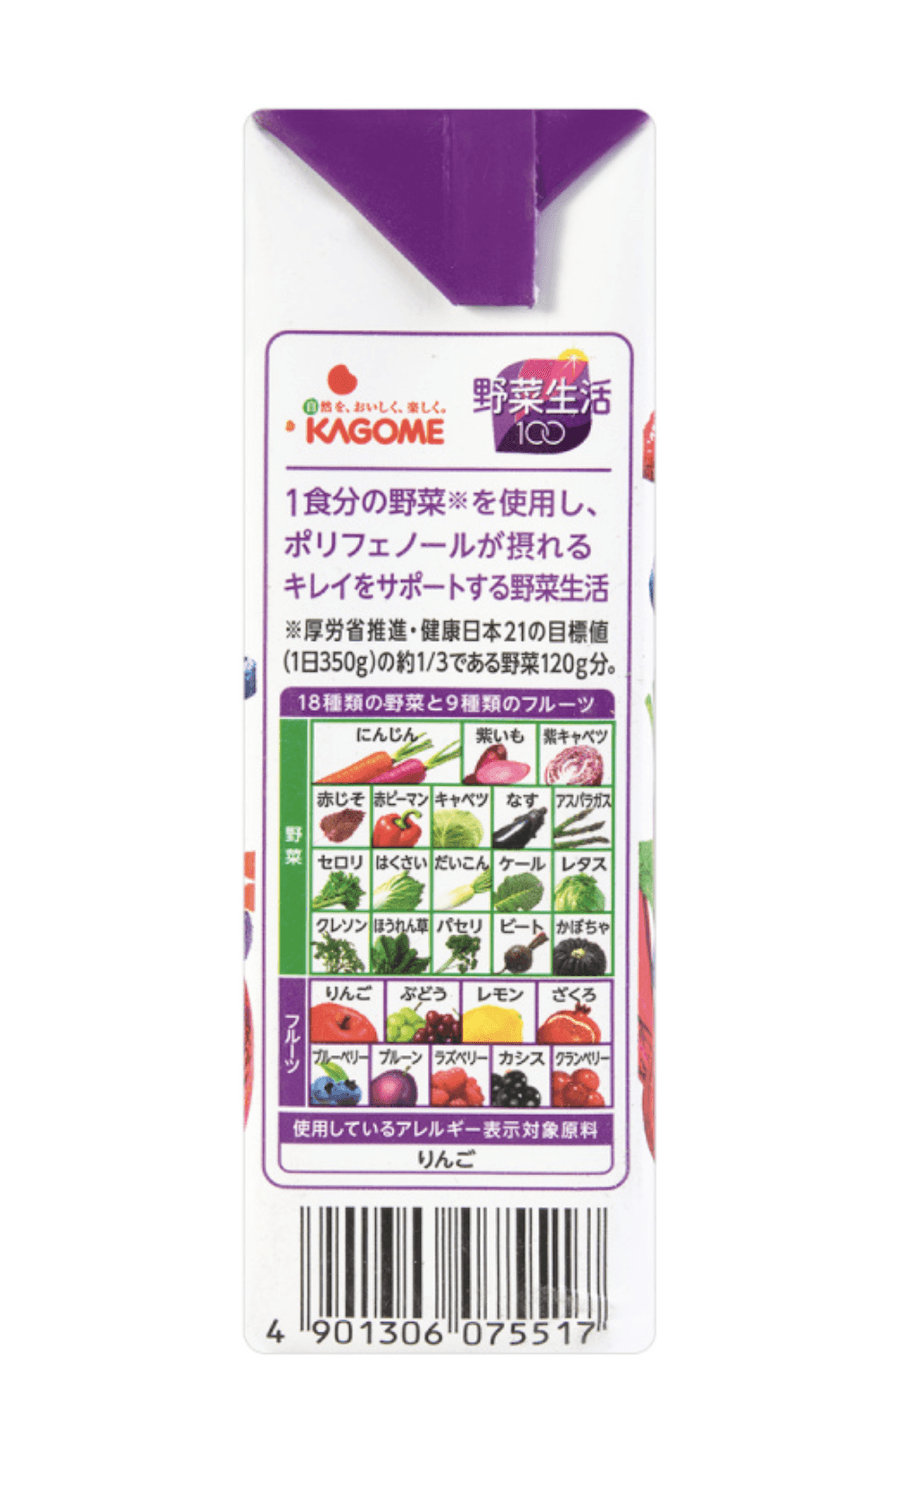 Dhl直发 日本直邮 日本kagome 野菜生活抗氧化美颜紫色蔬果汁0g 亚米